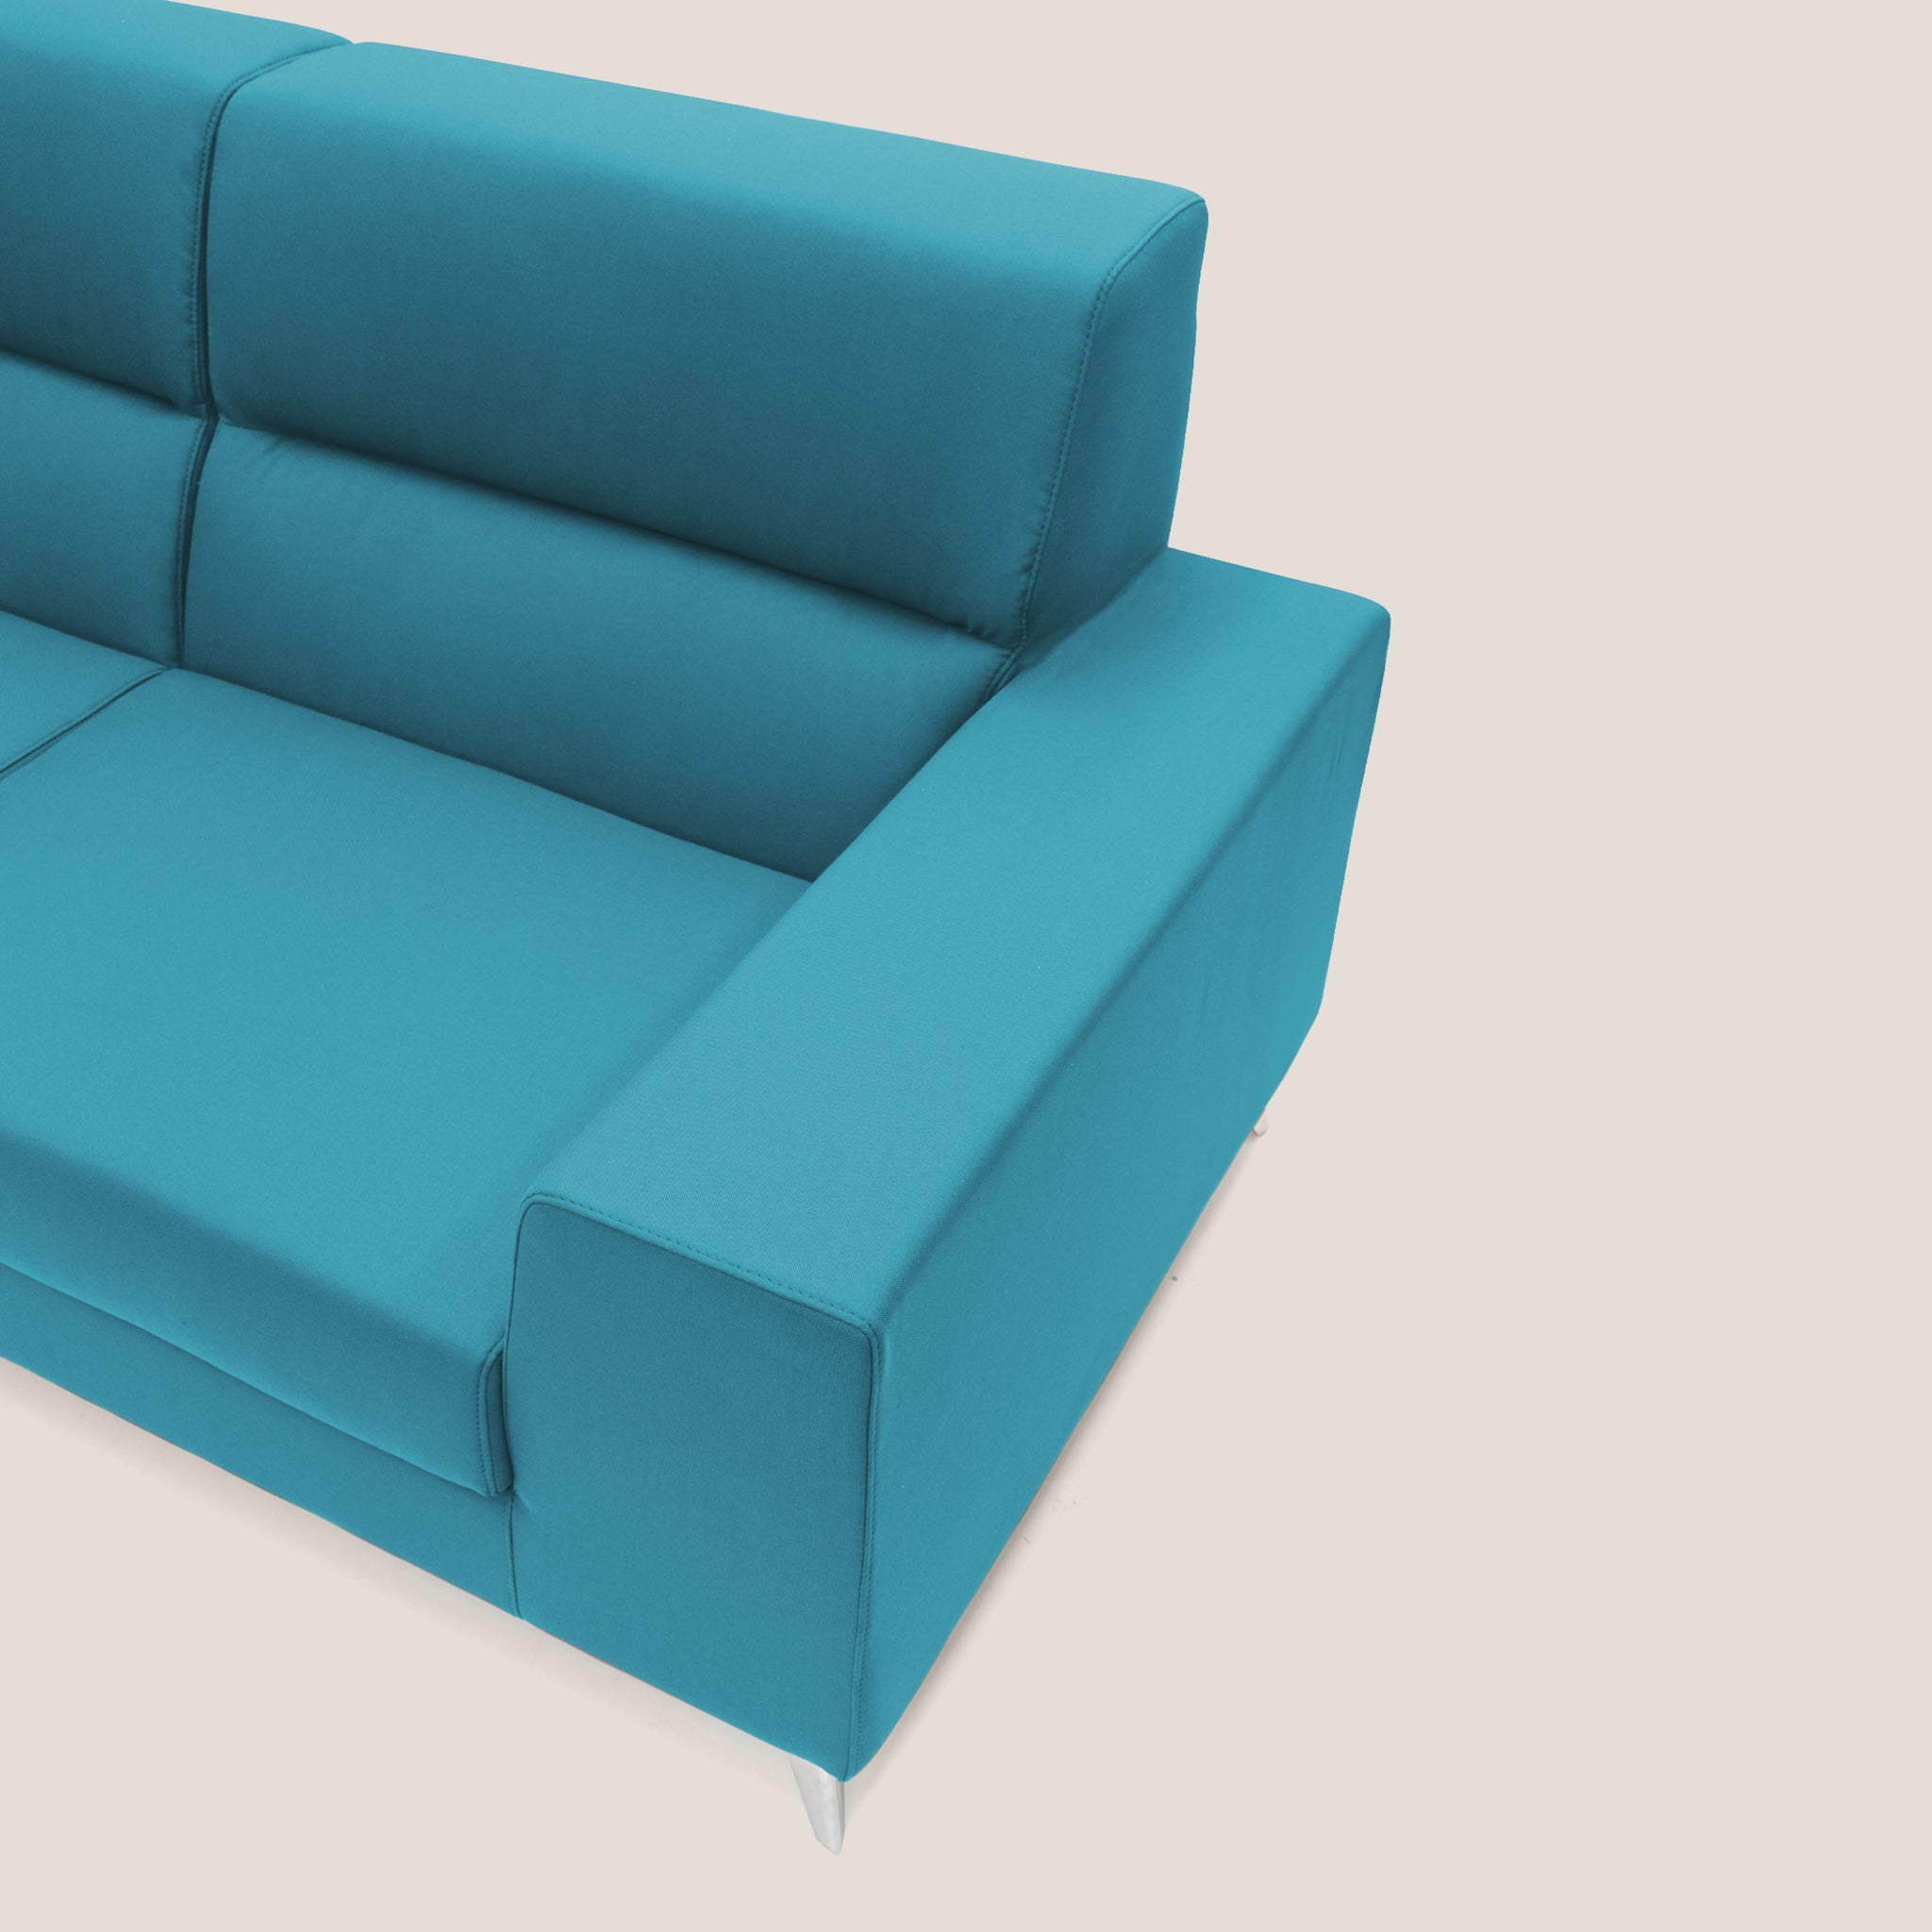 Titan divano moderno in tessuto impermeabile